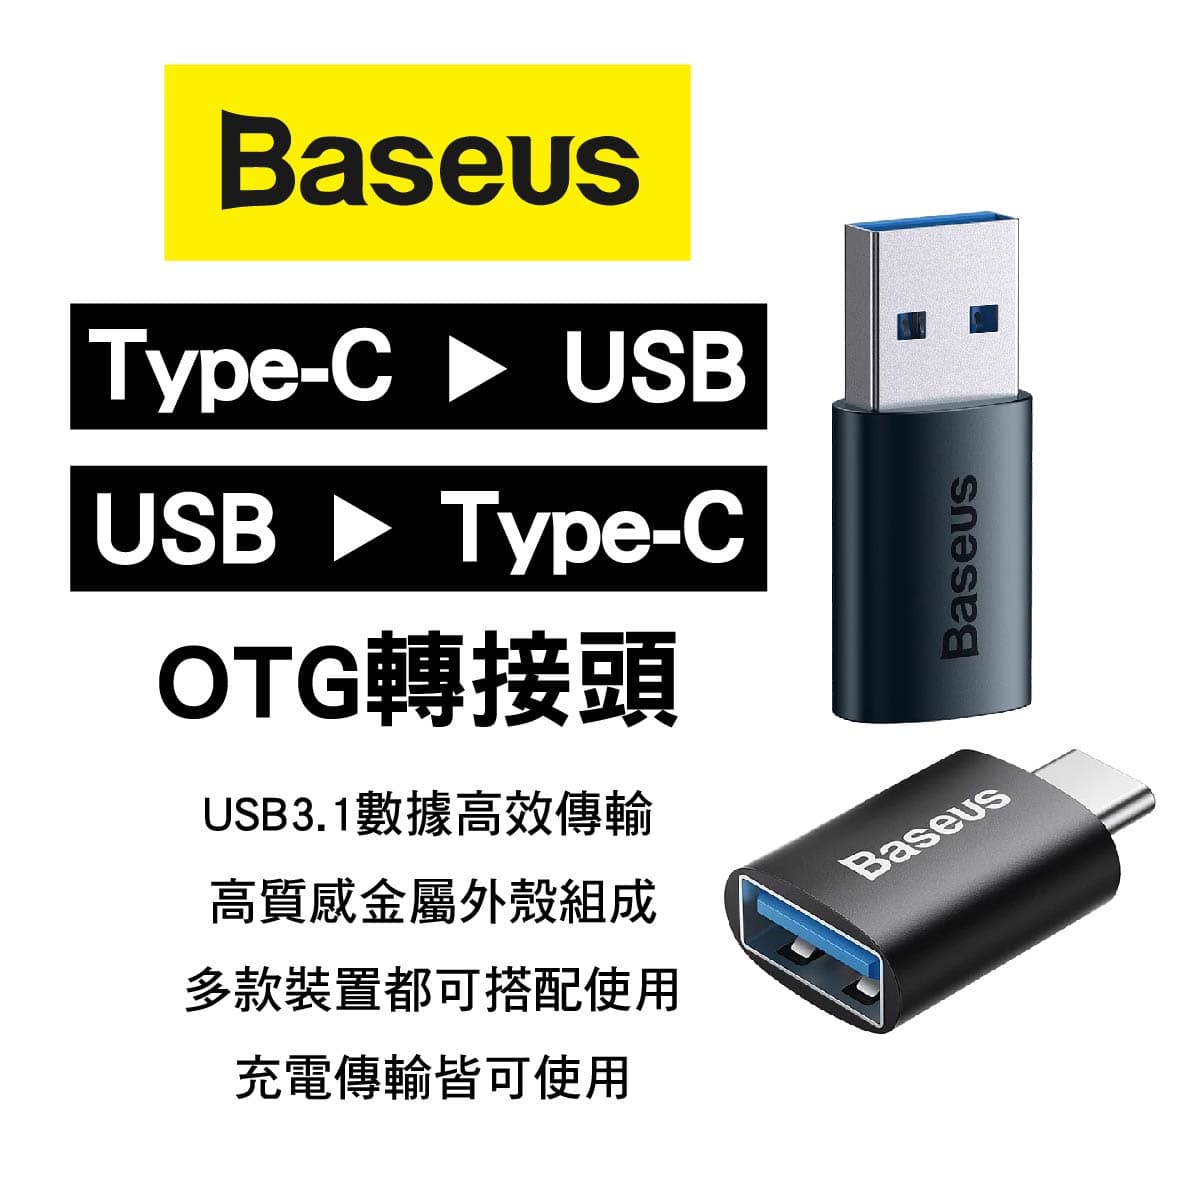 真便宜 BASEUS倍思 Type-C 轉USB/USB轉Type-C OTG轉接頭